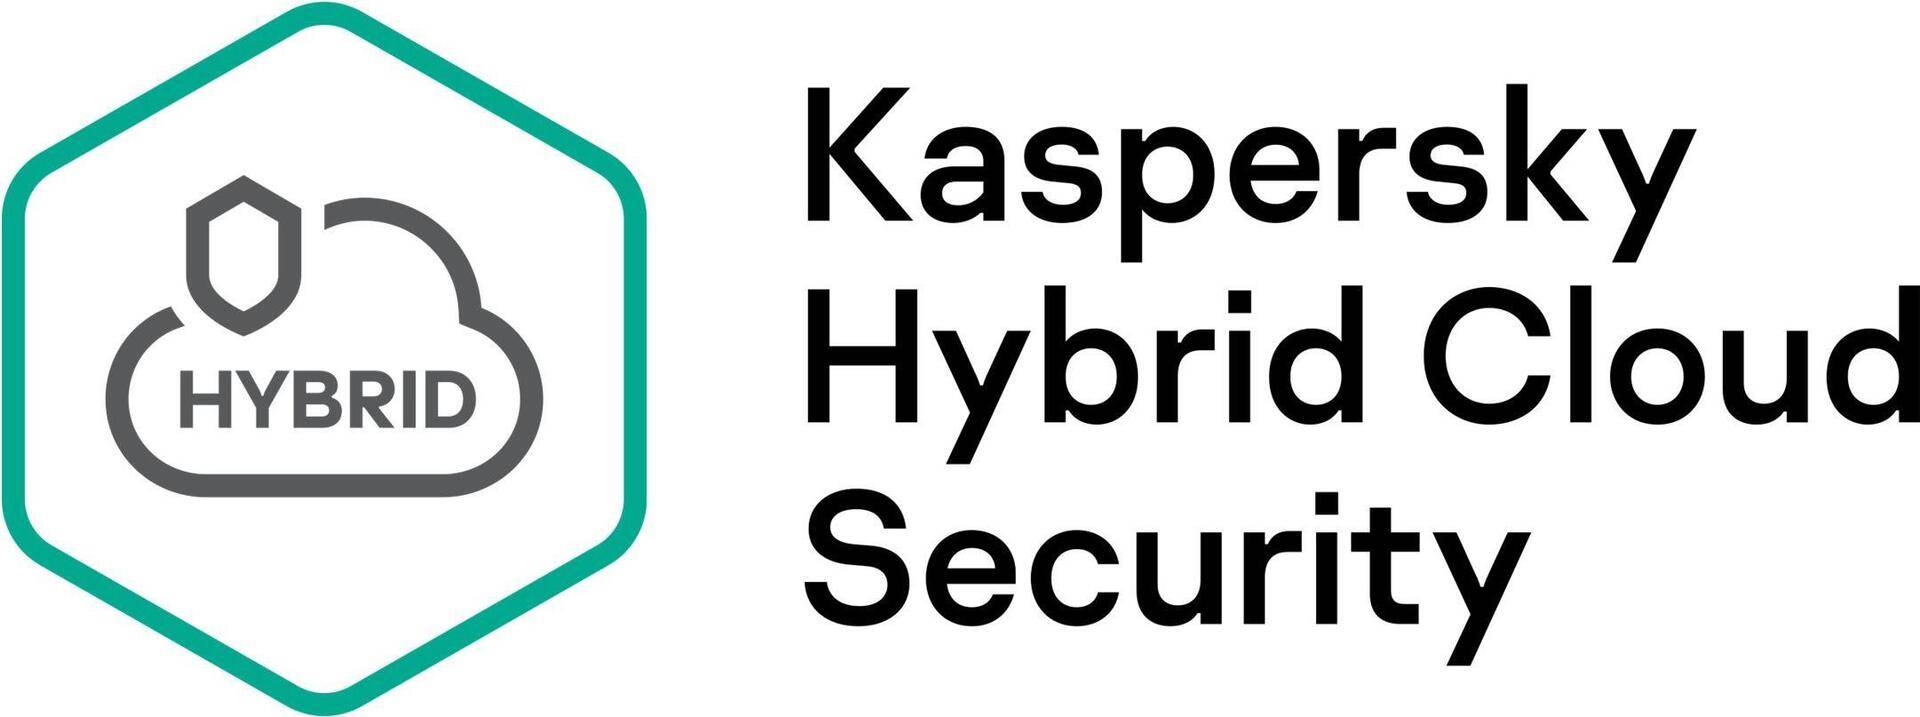 Kaspersky Hybrid Cloud Security Enterprise CPU European Edi. 150-249 CPU 3-Year Renewal License (KL4553XASTR) von Kaspersky Lab